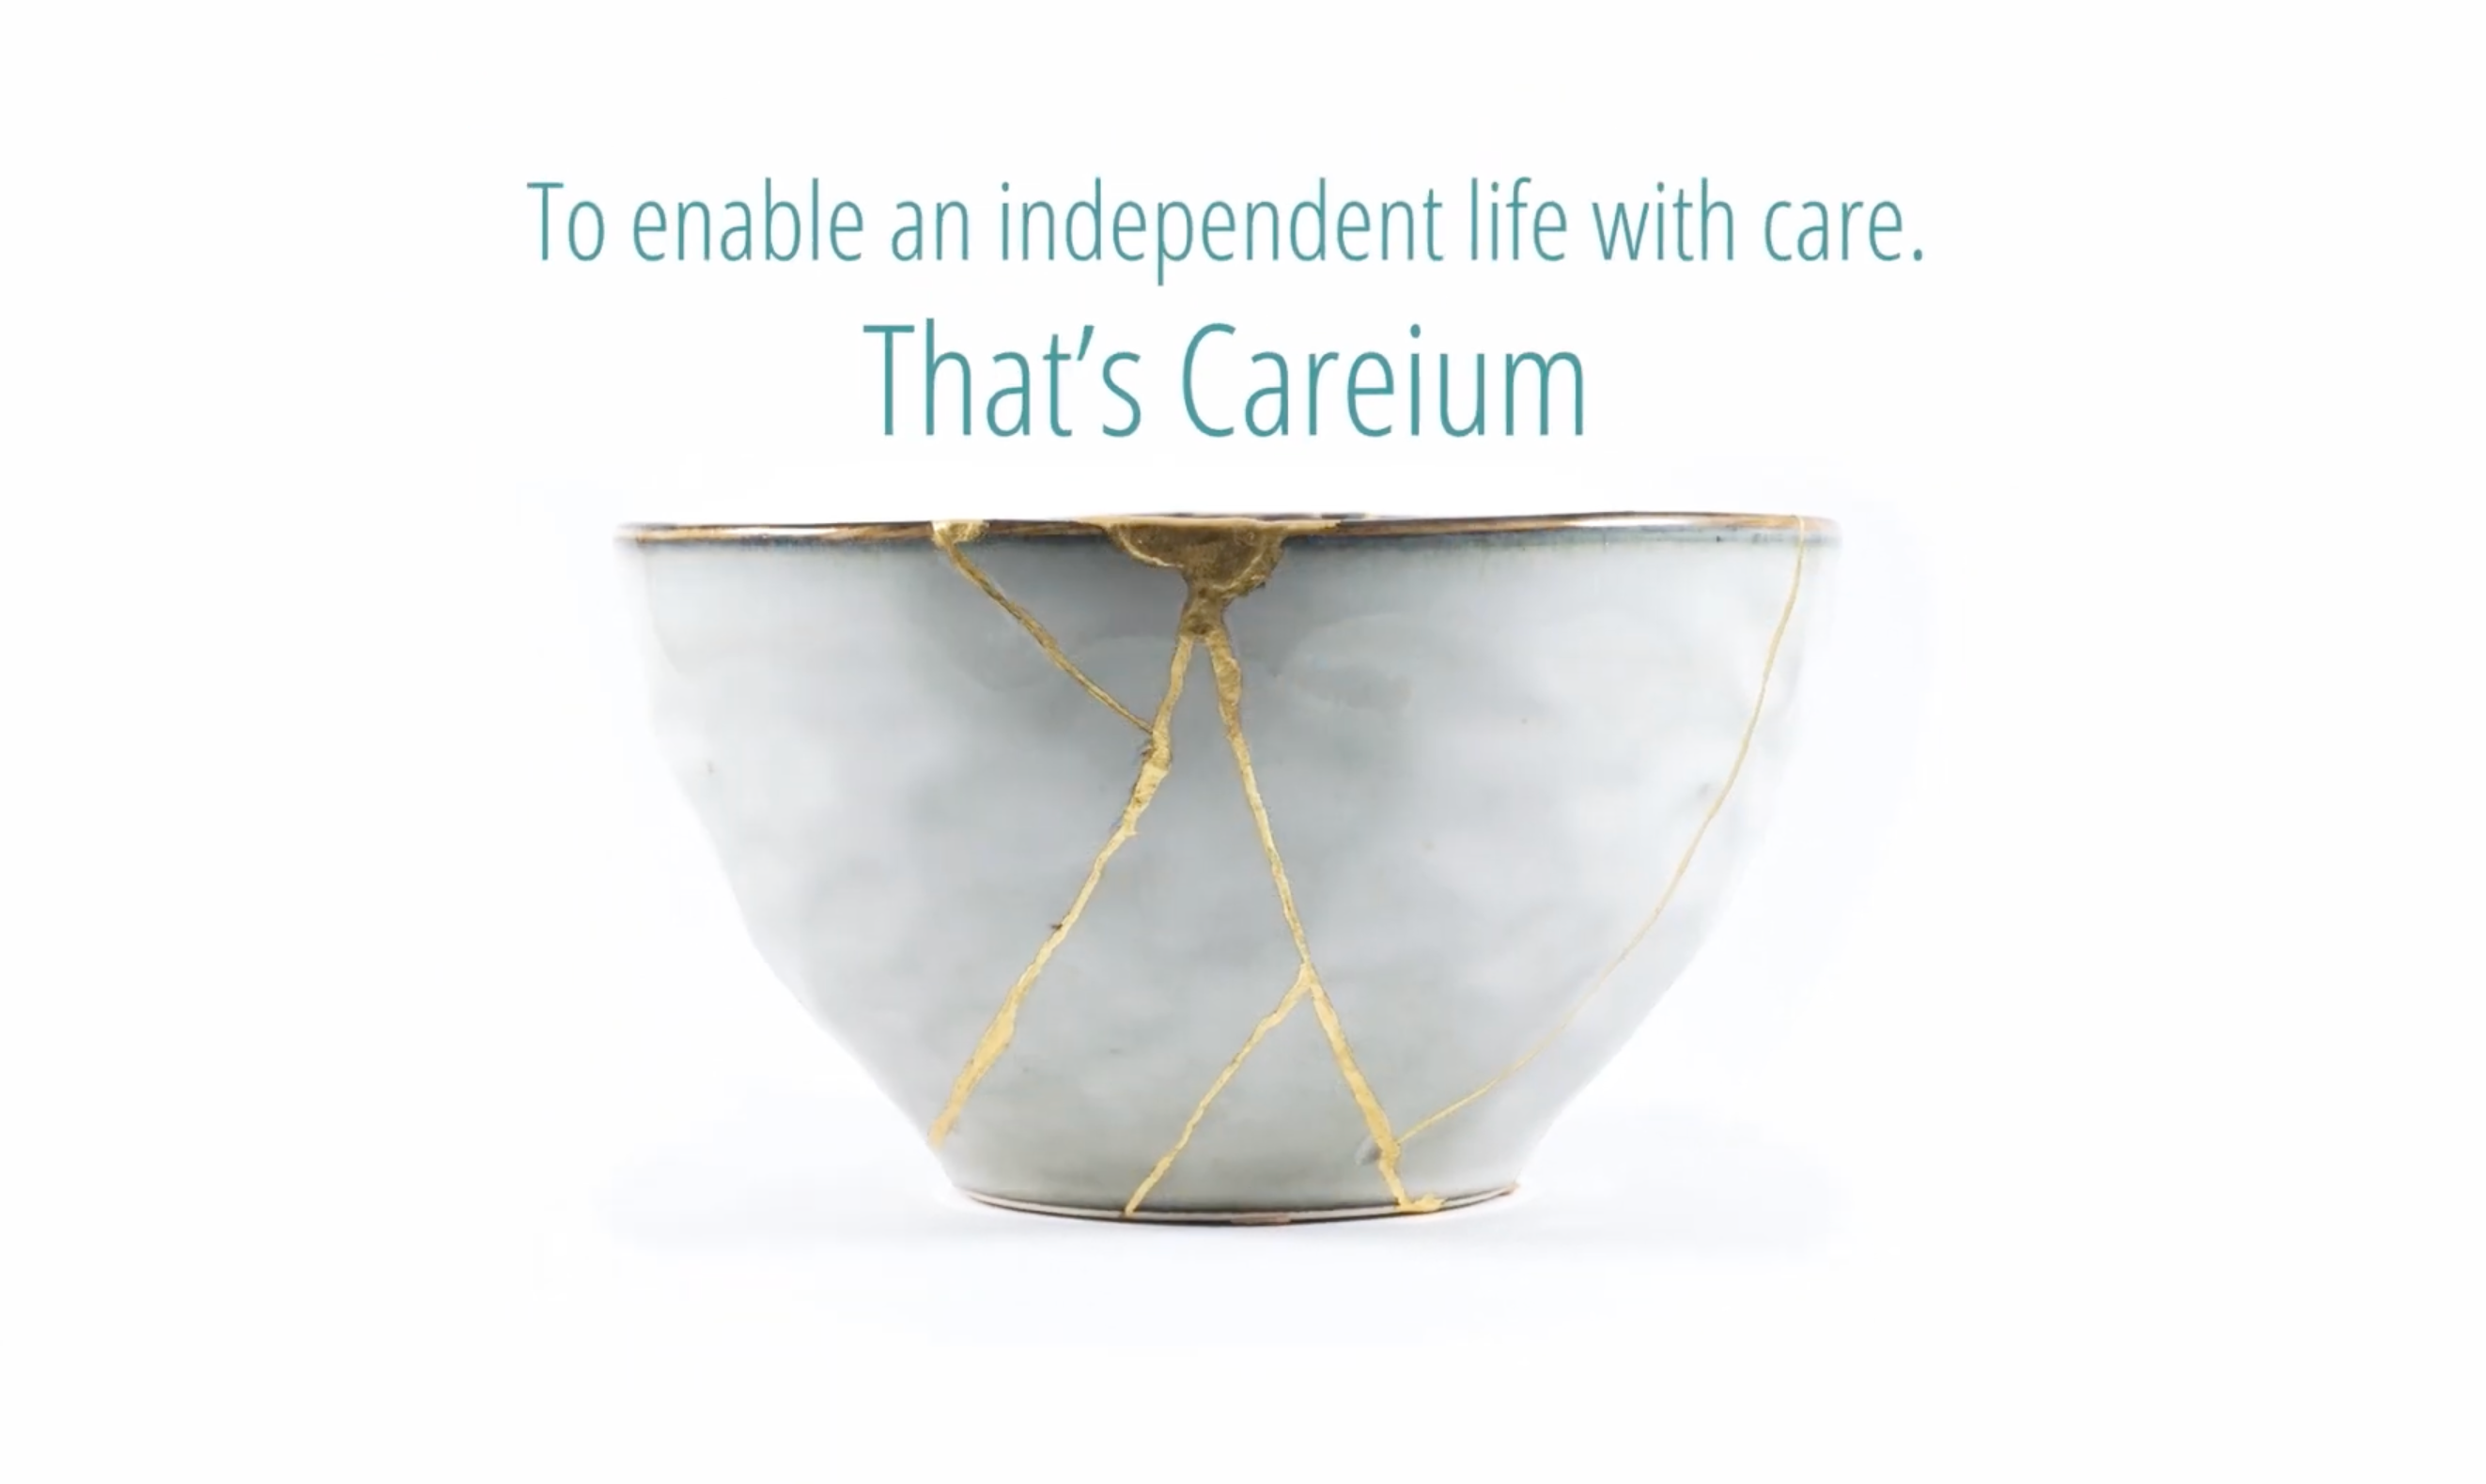 This is Careium